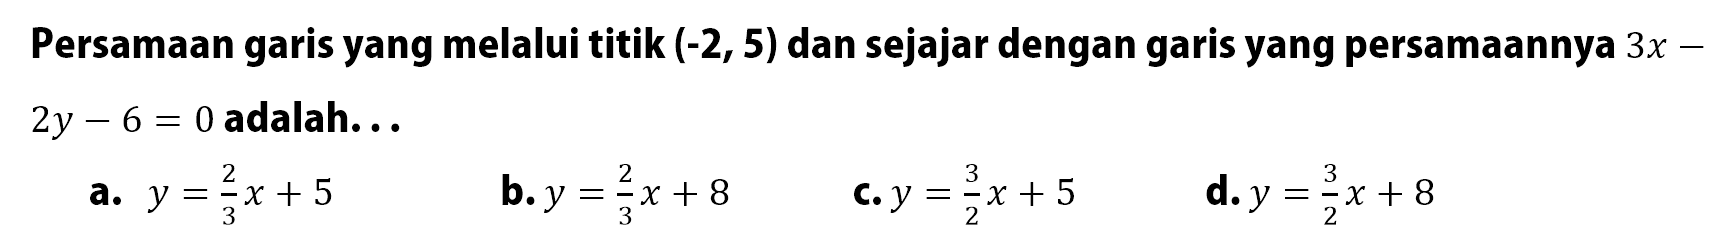 Persamaan garis yang melalui titik (-2, 5) dan sejajar dengan garis yang persamaannya 3x - 2y - 6 = 0 adalah ....